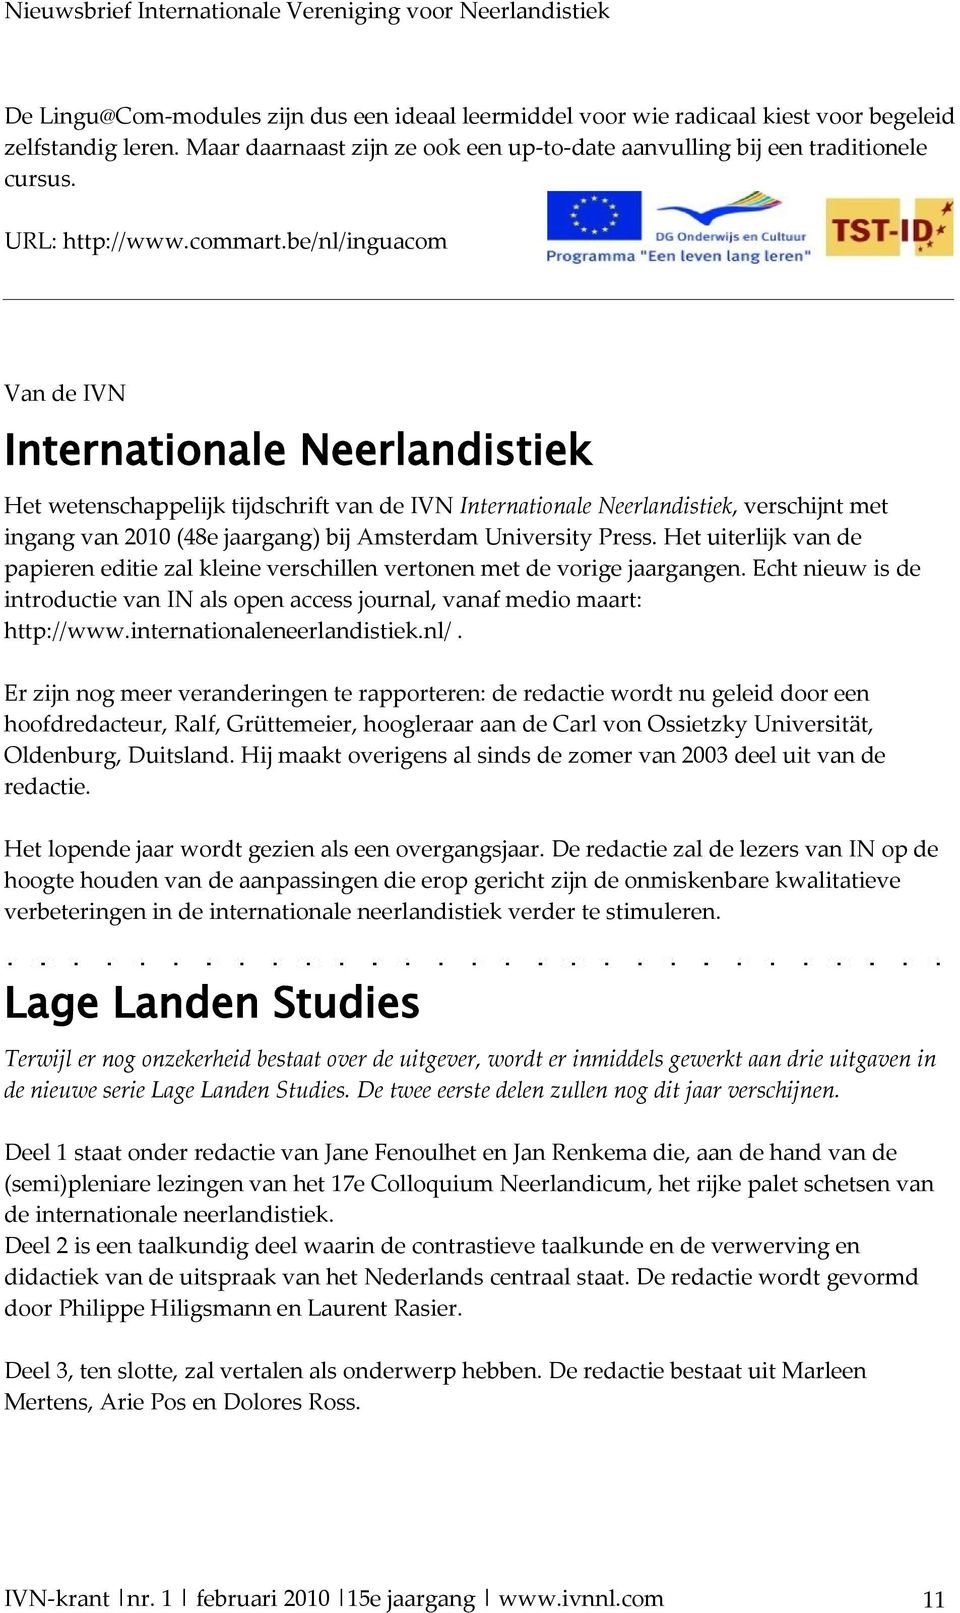 be/nl/inguacom Van de IVN Internationale Neerlandistiek Het wetenschappelijk tijdschrift van de IVN Internationale Neerlandistiek, verschijnt met ingang van 2010 (48e jaargang) bij Amsterdam